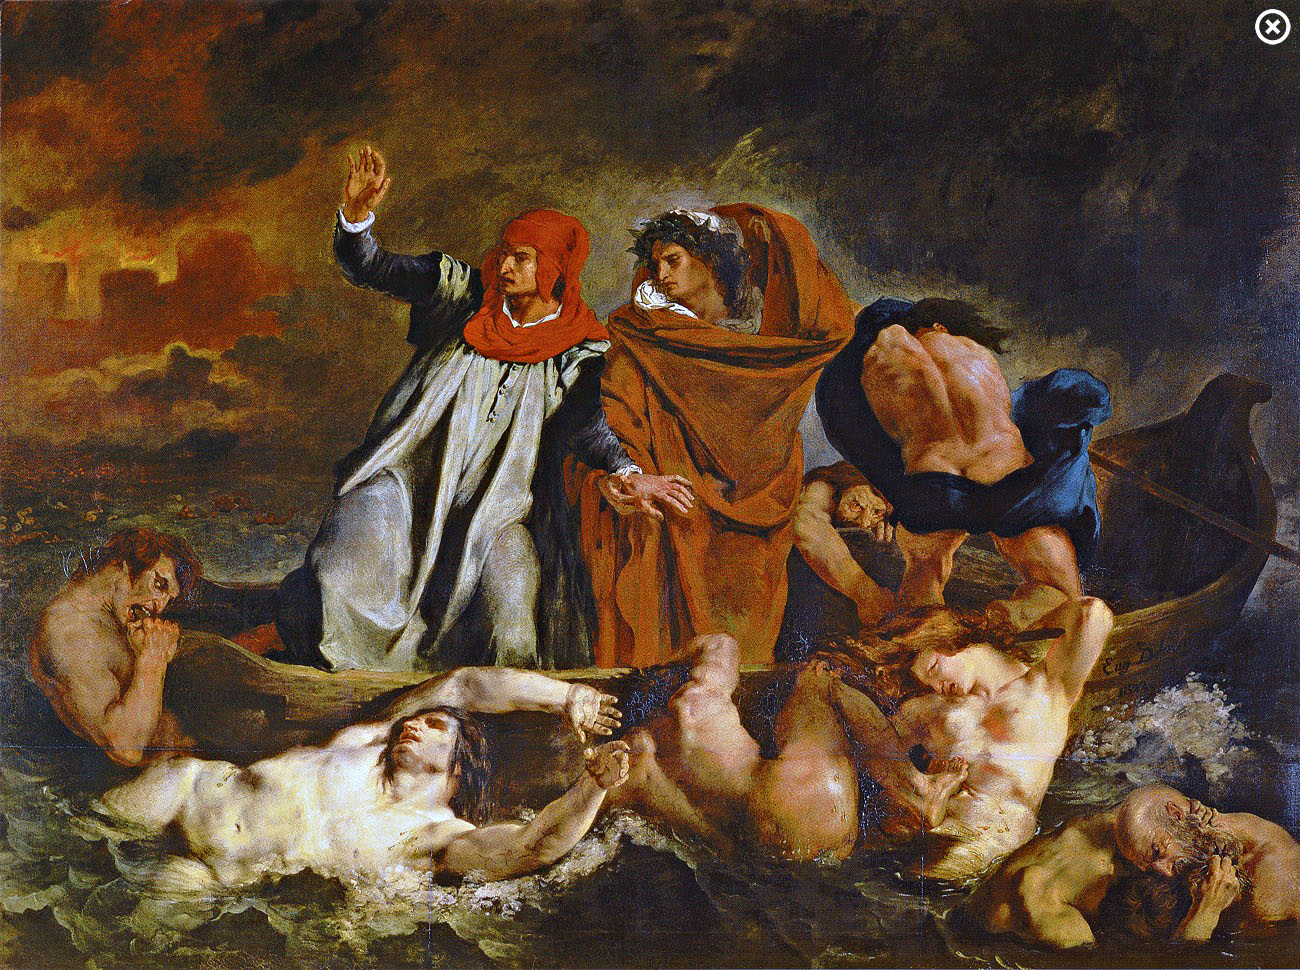 Delacroix: The Barque of Dante, 1822 (Louvre, Paris, 74 x 95 inches)